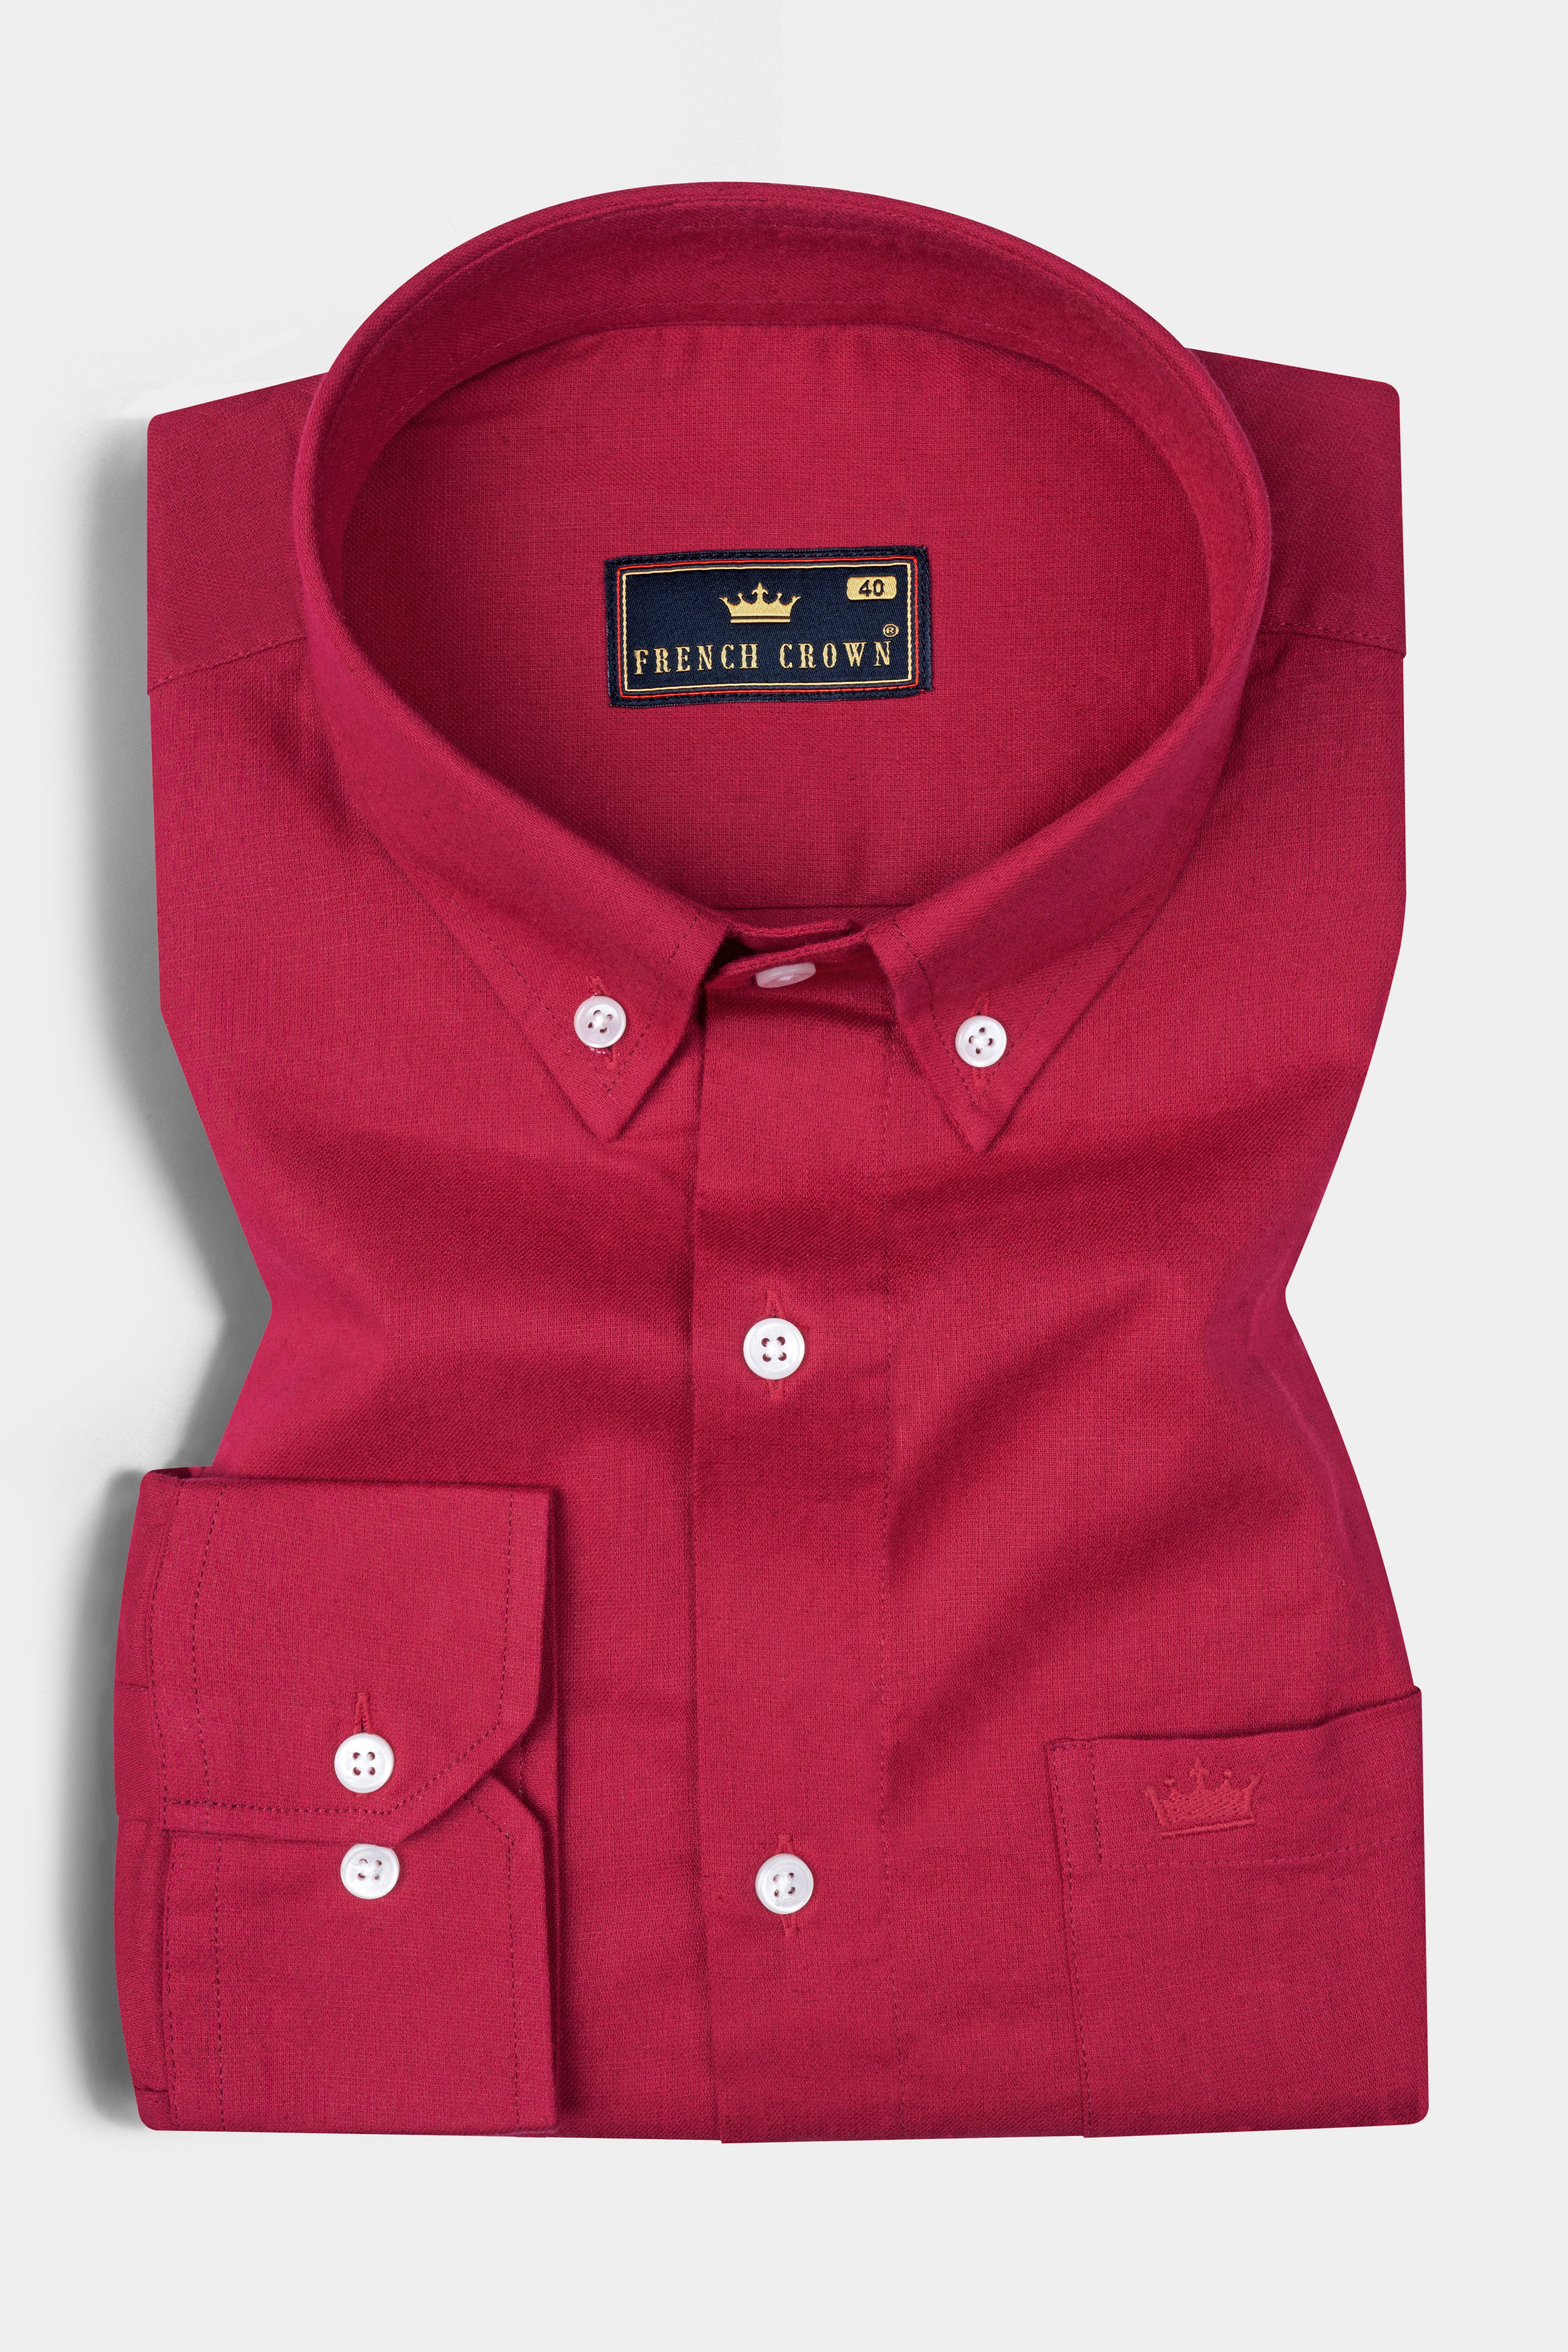 Shiraz Red Luxurious Linen Shirt